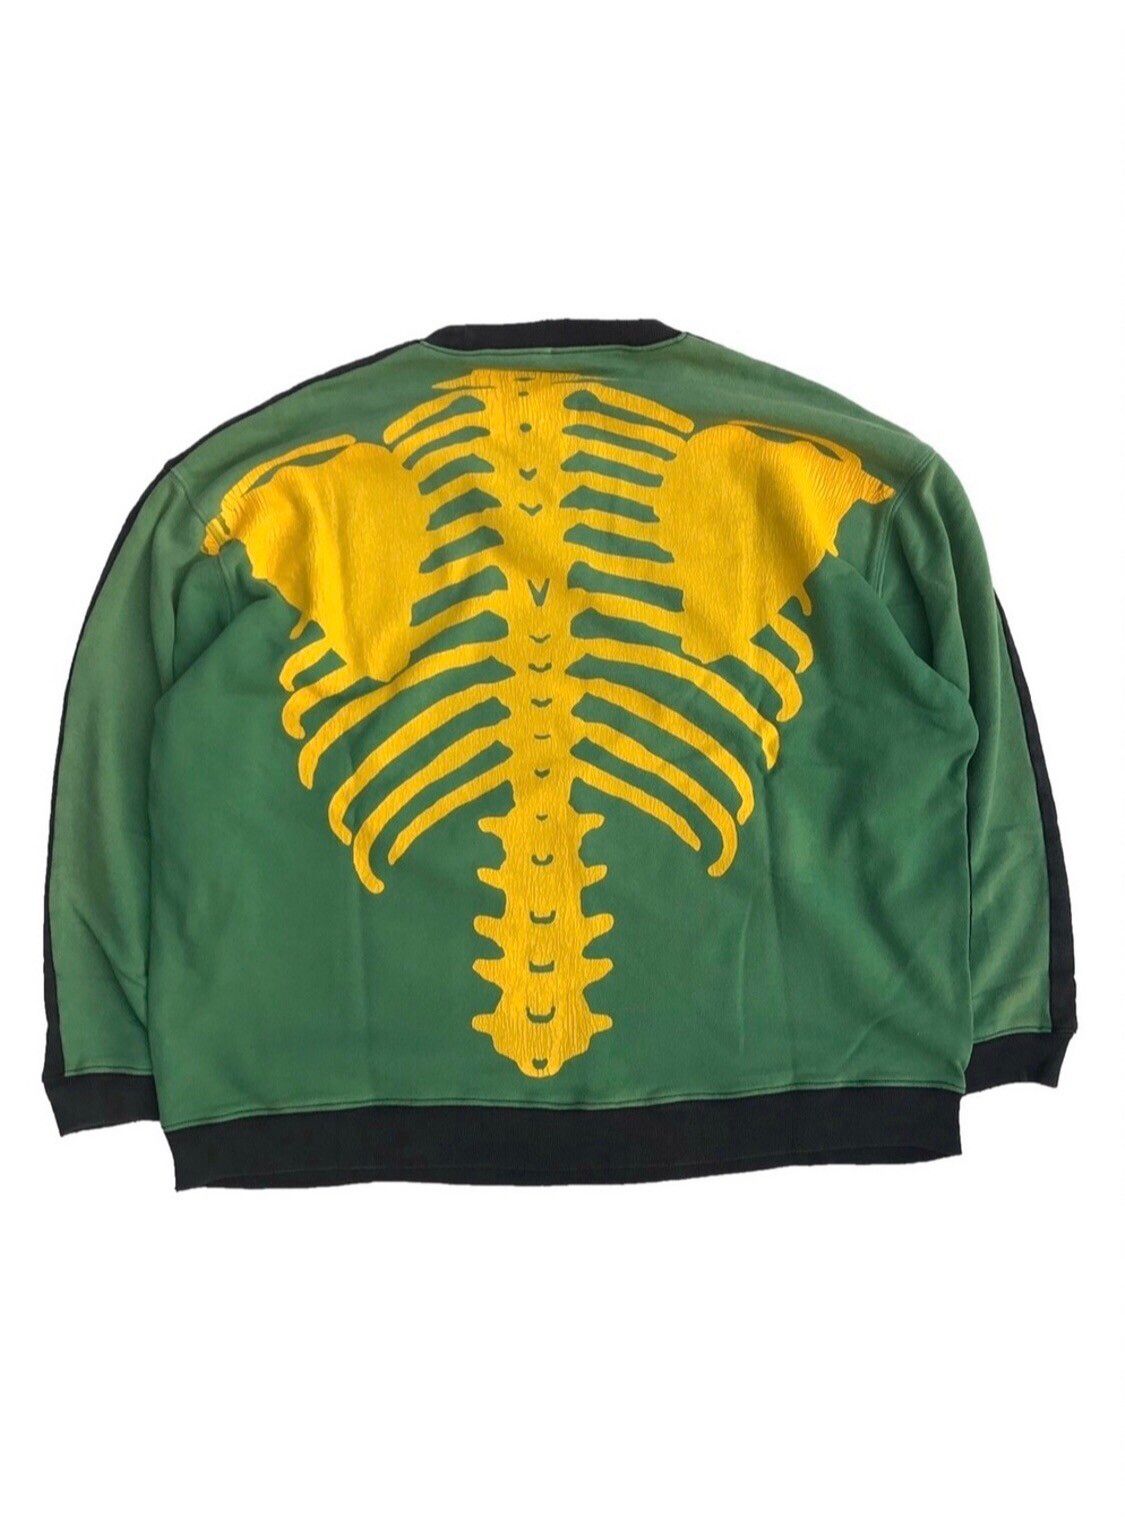 Kapital Kapital Skeleton Sweater 裹毛 BONEpt (GREEN/ BLACK) Size US XL / EU 56 / 4 - 1 Preview